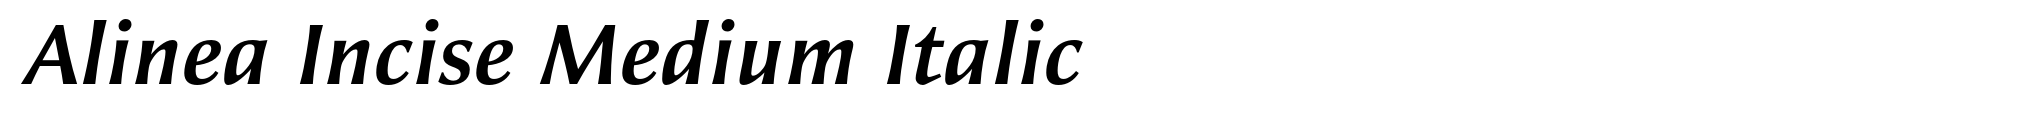 Alinea Incise Medium Italic image